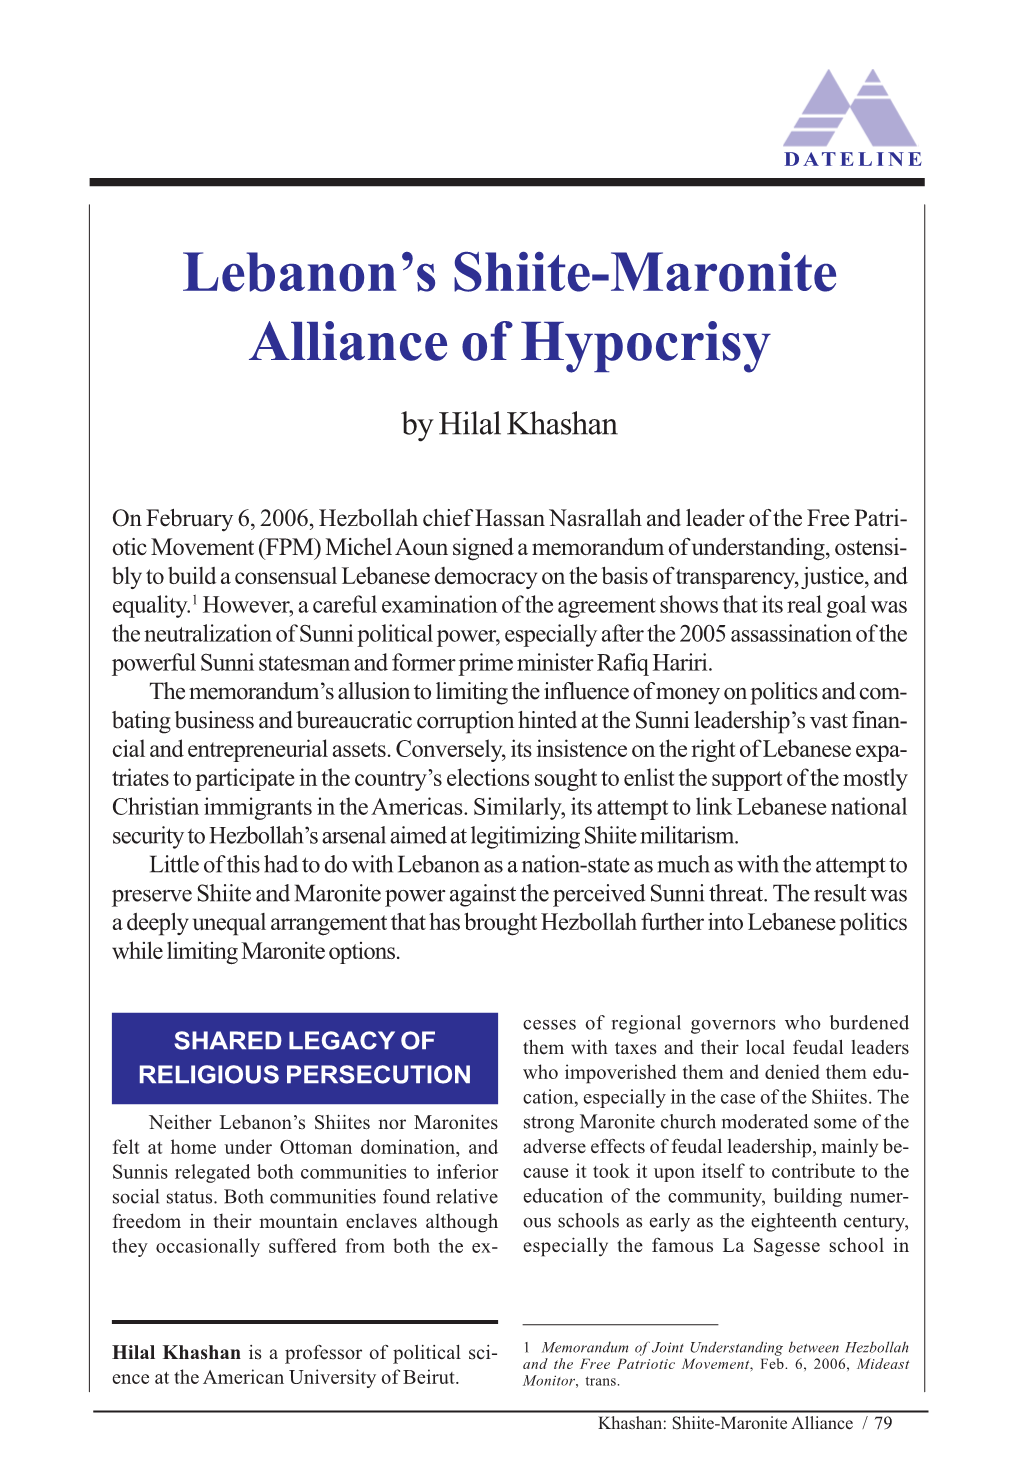 Lebanon's Shiite-Maronite Alliance of Hypocrisy